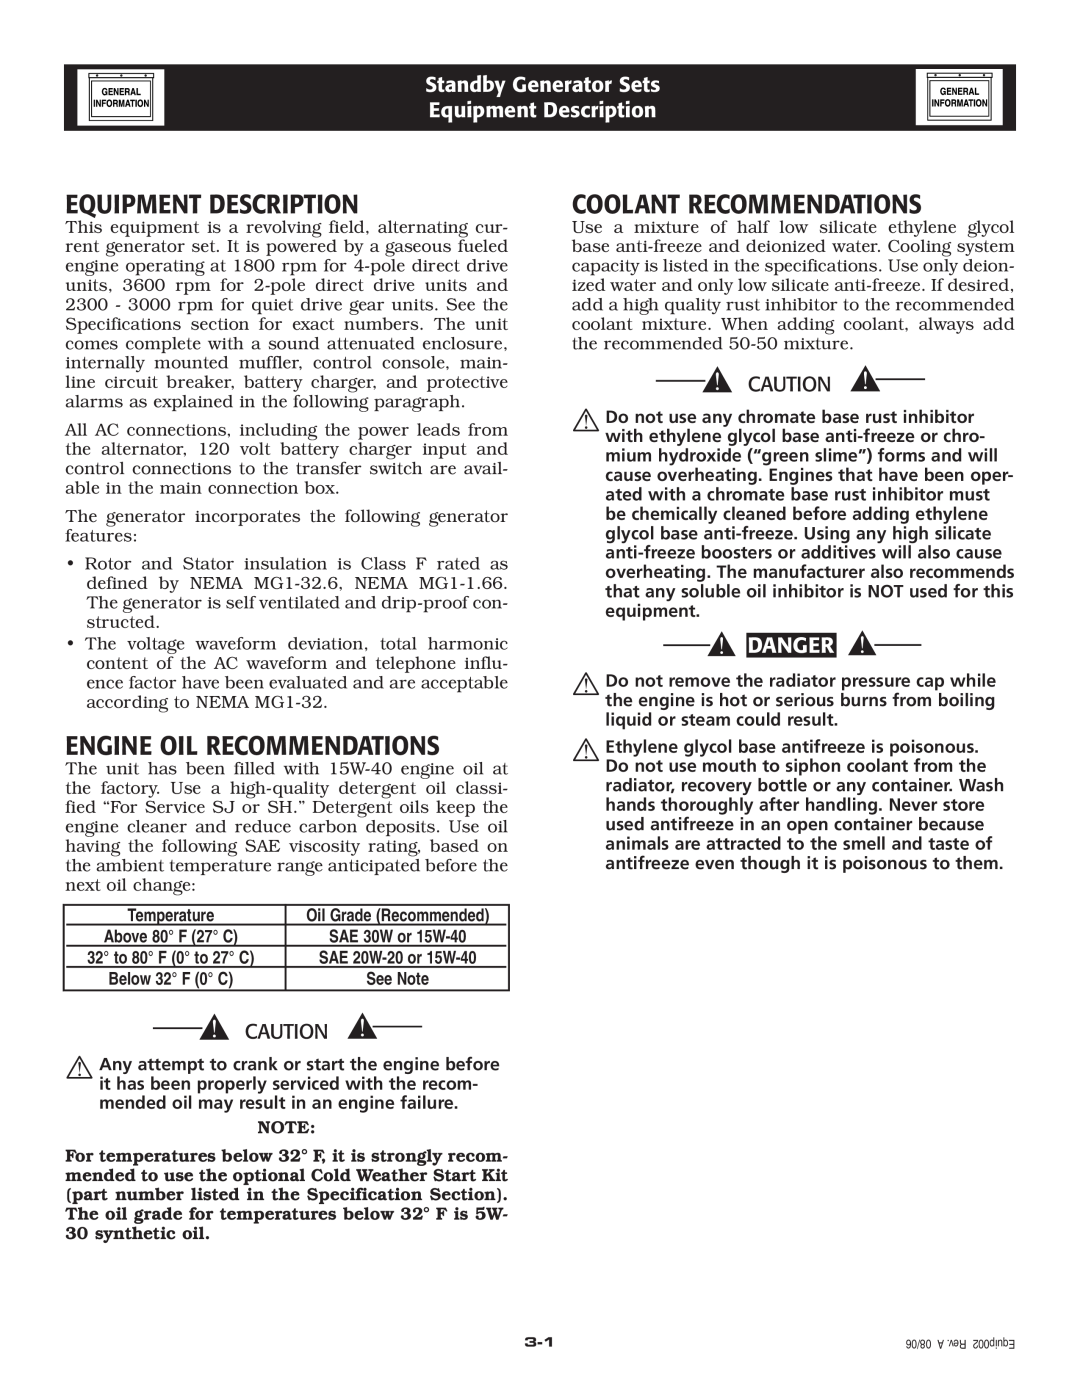 Guardian Technologies 005336-1, 005337-1 Equipment Description, Engine Oil Recommendations, Coolant Recommendations 